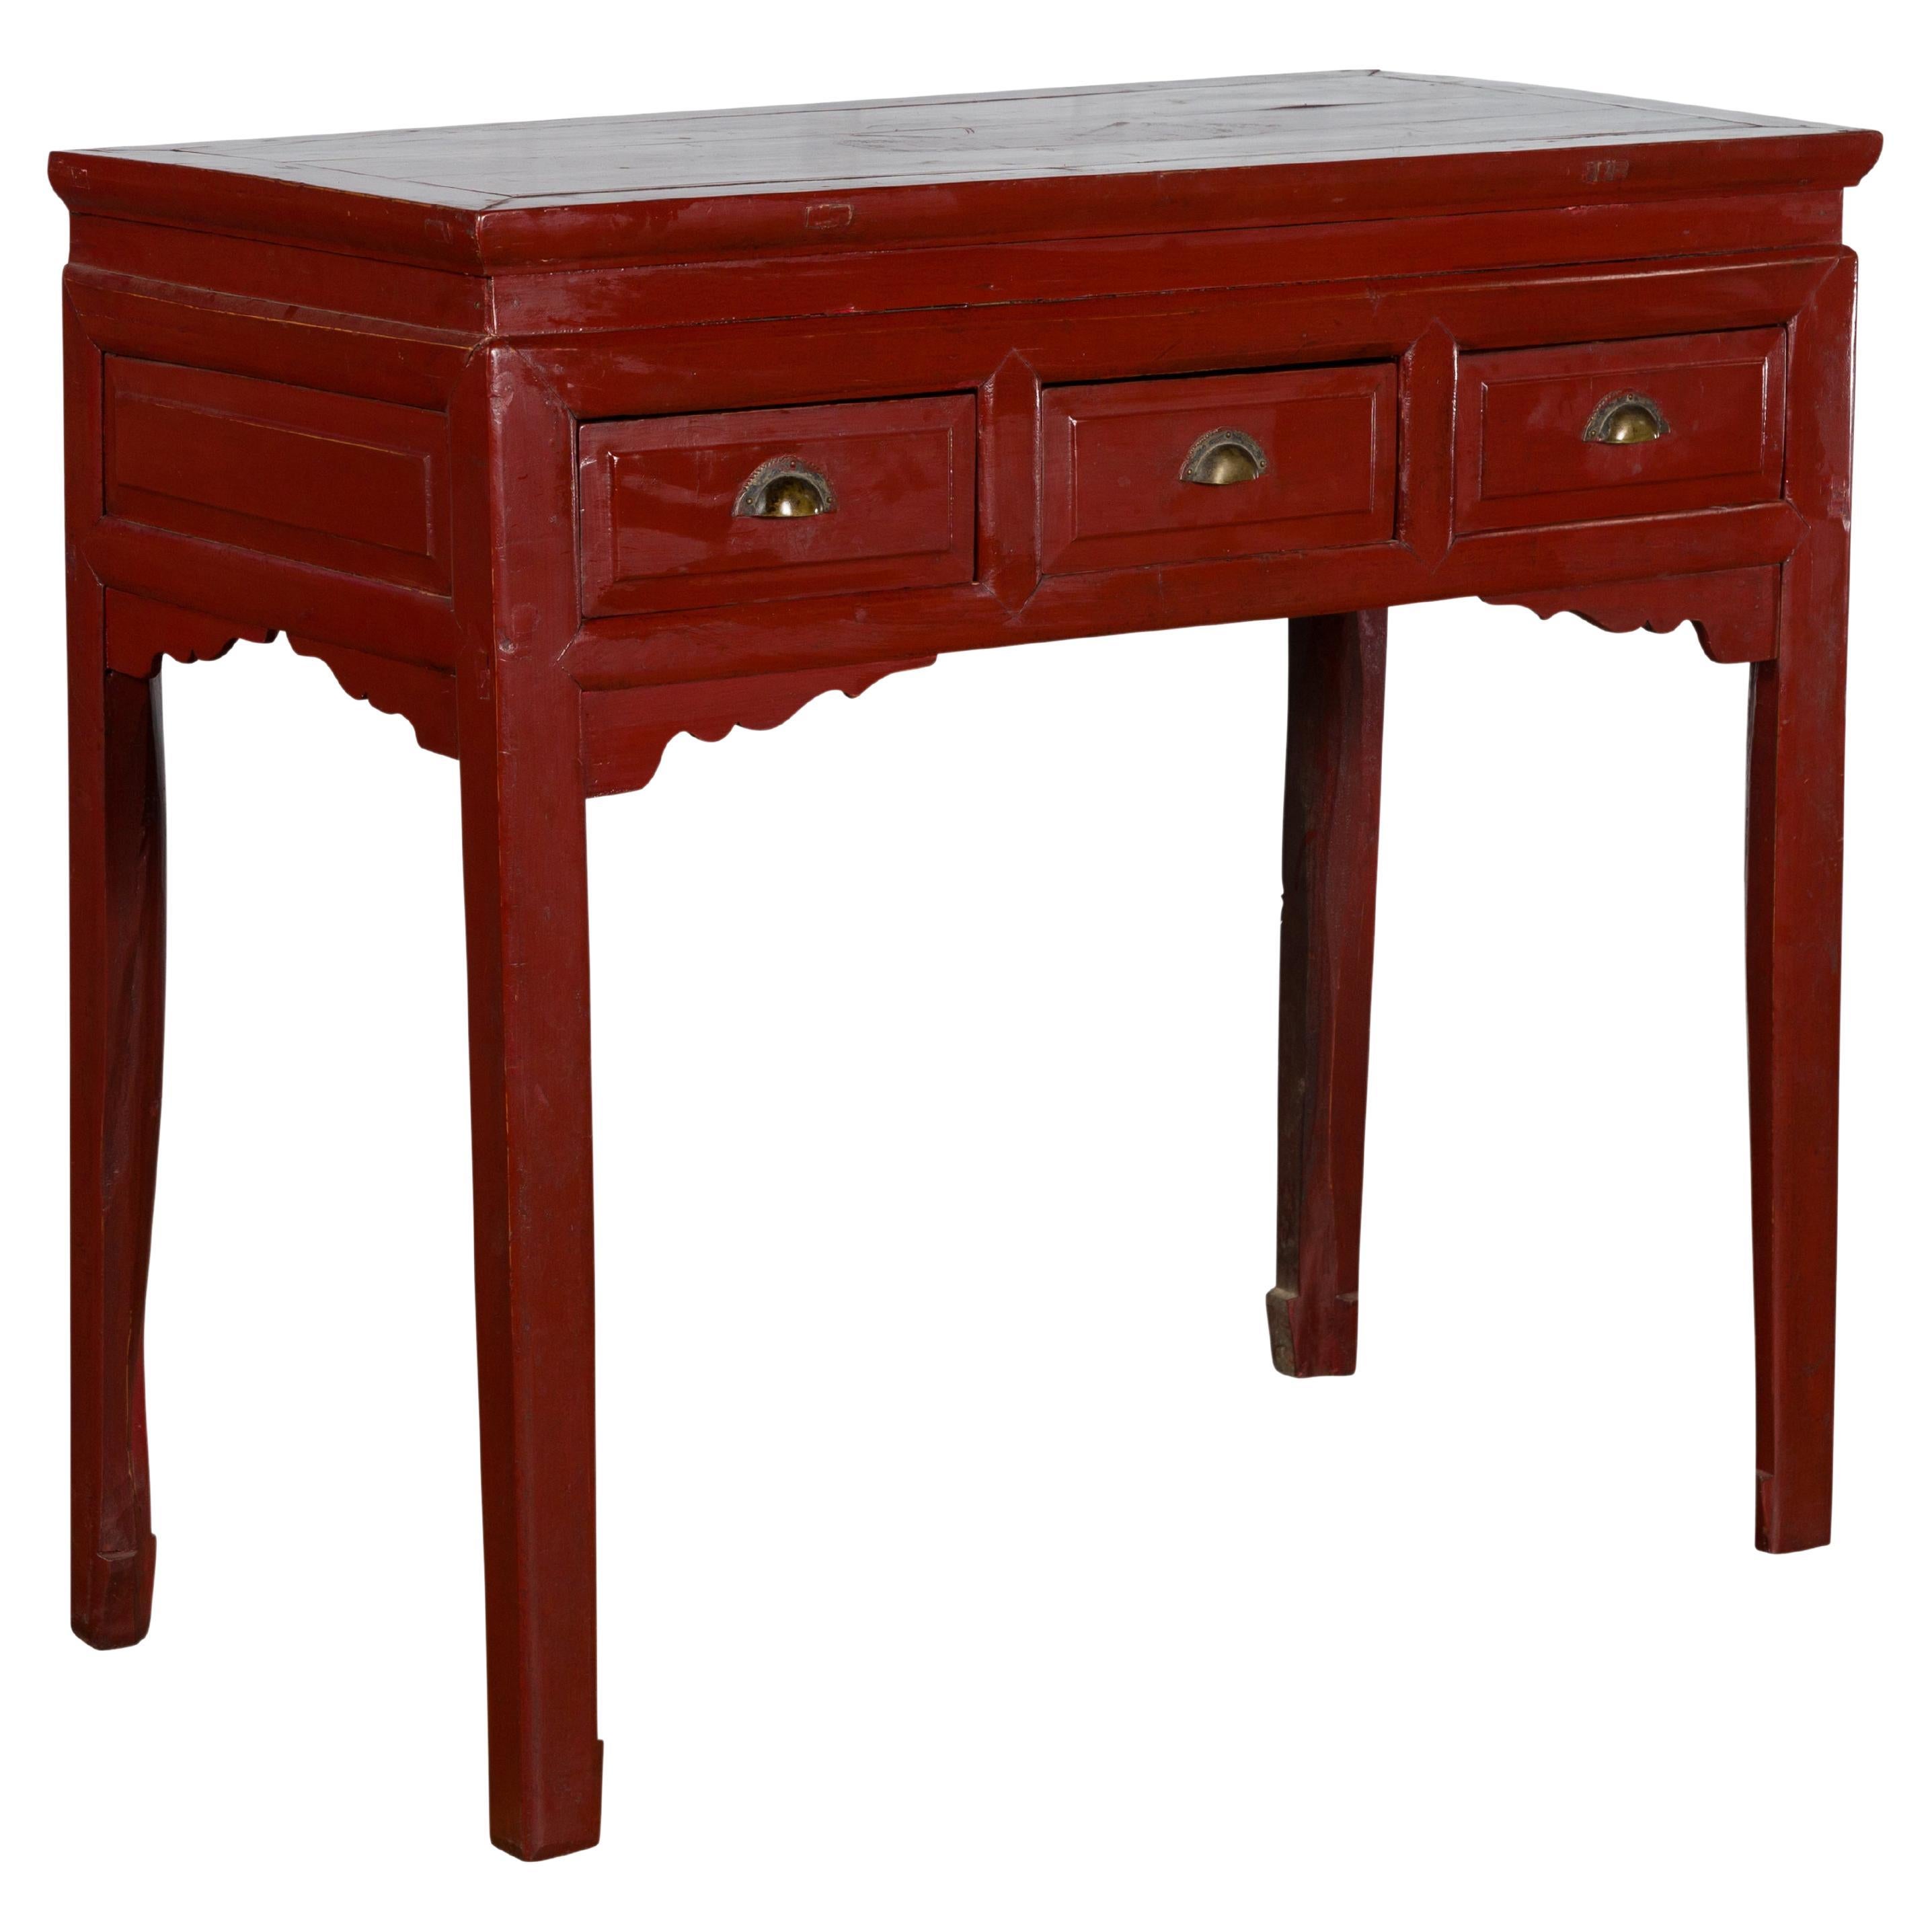 Table console chinoise vintage en laque rouge avec tiroirs et écoinçons sculptés